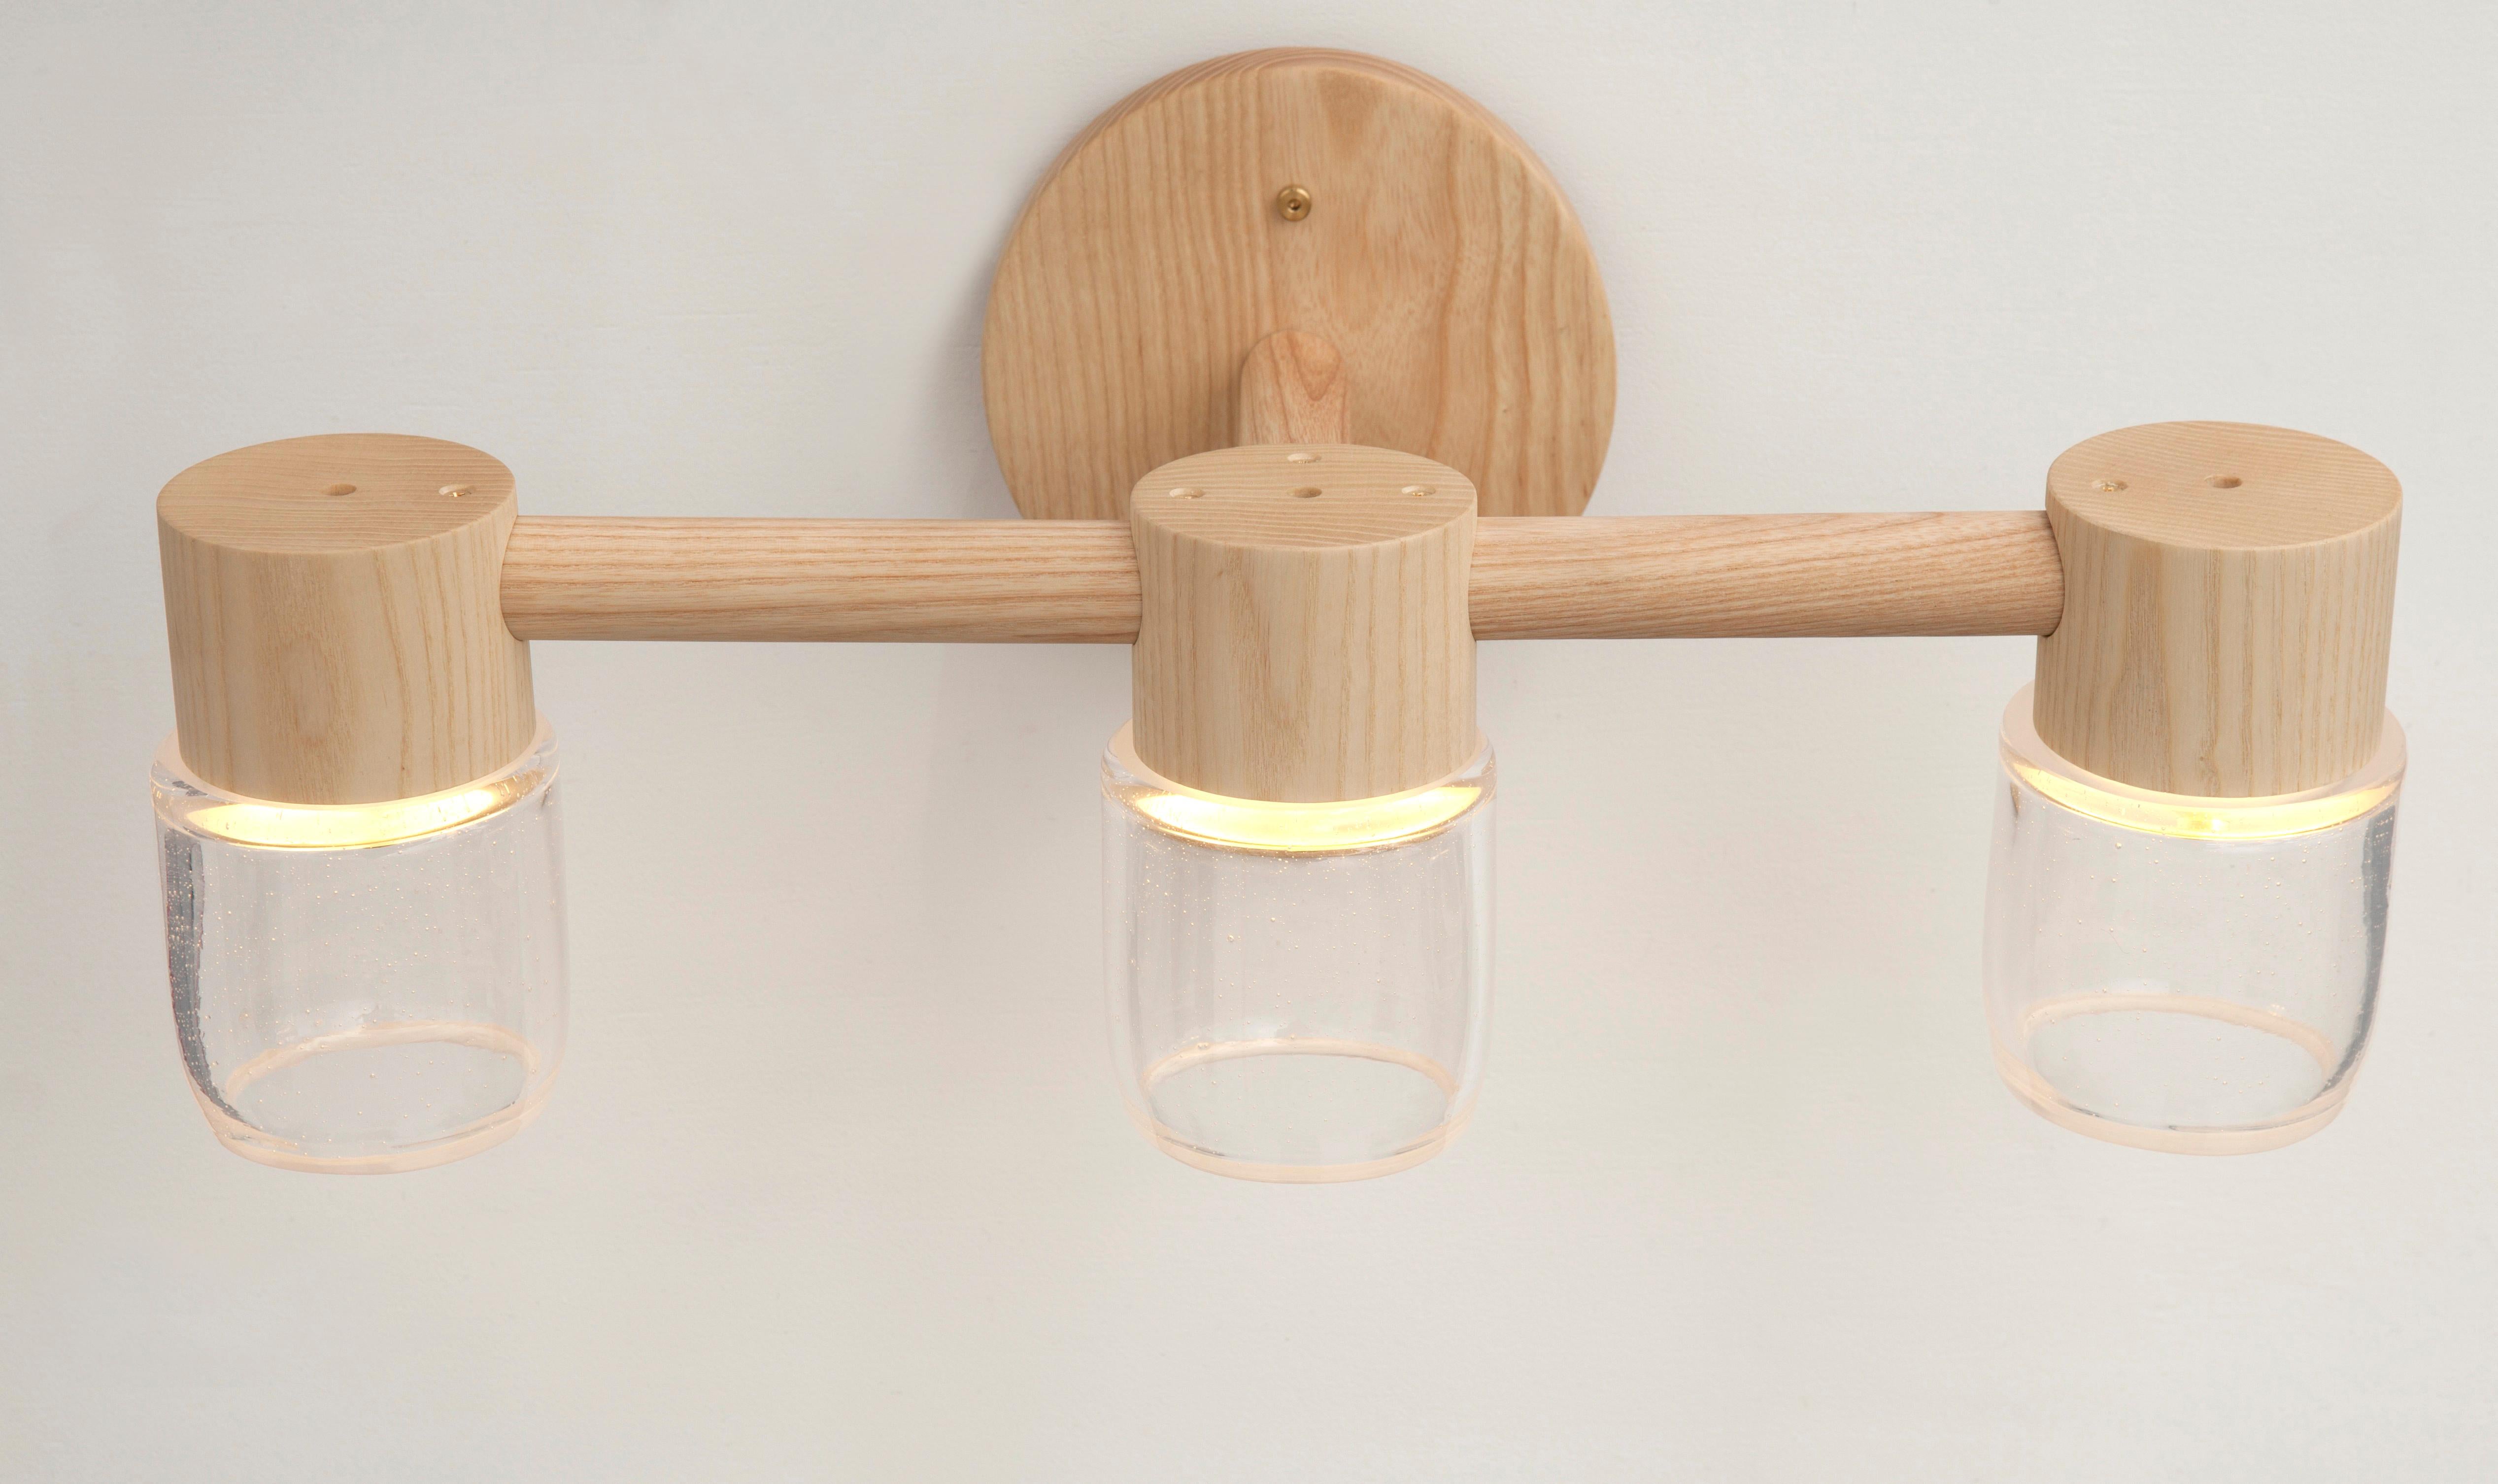 Diese handgefertigte Leuchte kombiniert einen minimalistischen Baldachin aus Massivholz mit mundgeblasenen Glasdiffusoren. Effiziente LED-Beleuchtungskomponenten sind in jedem Baldachin versteckt, so dass die Glasdiffusoren ohne sichtbare Glühbirne